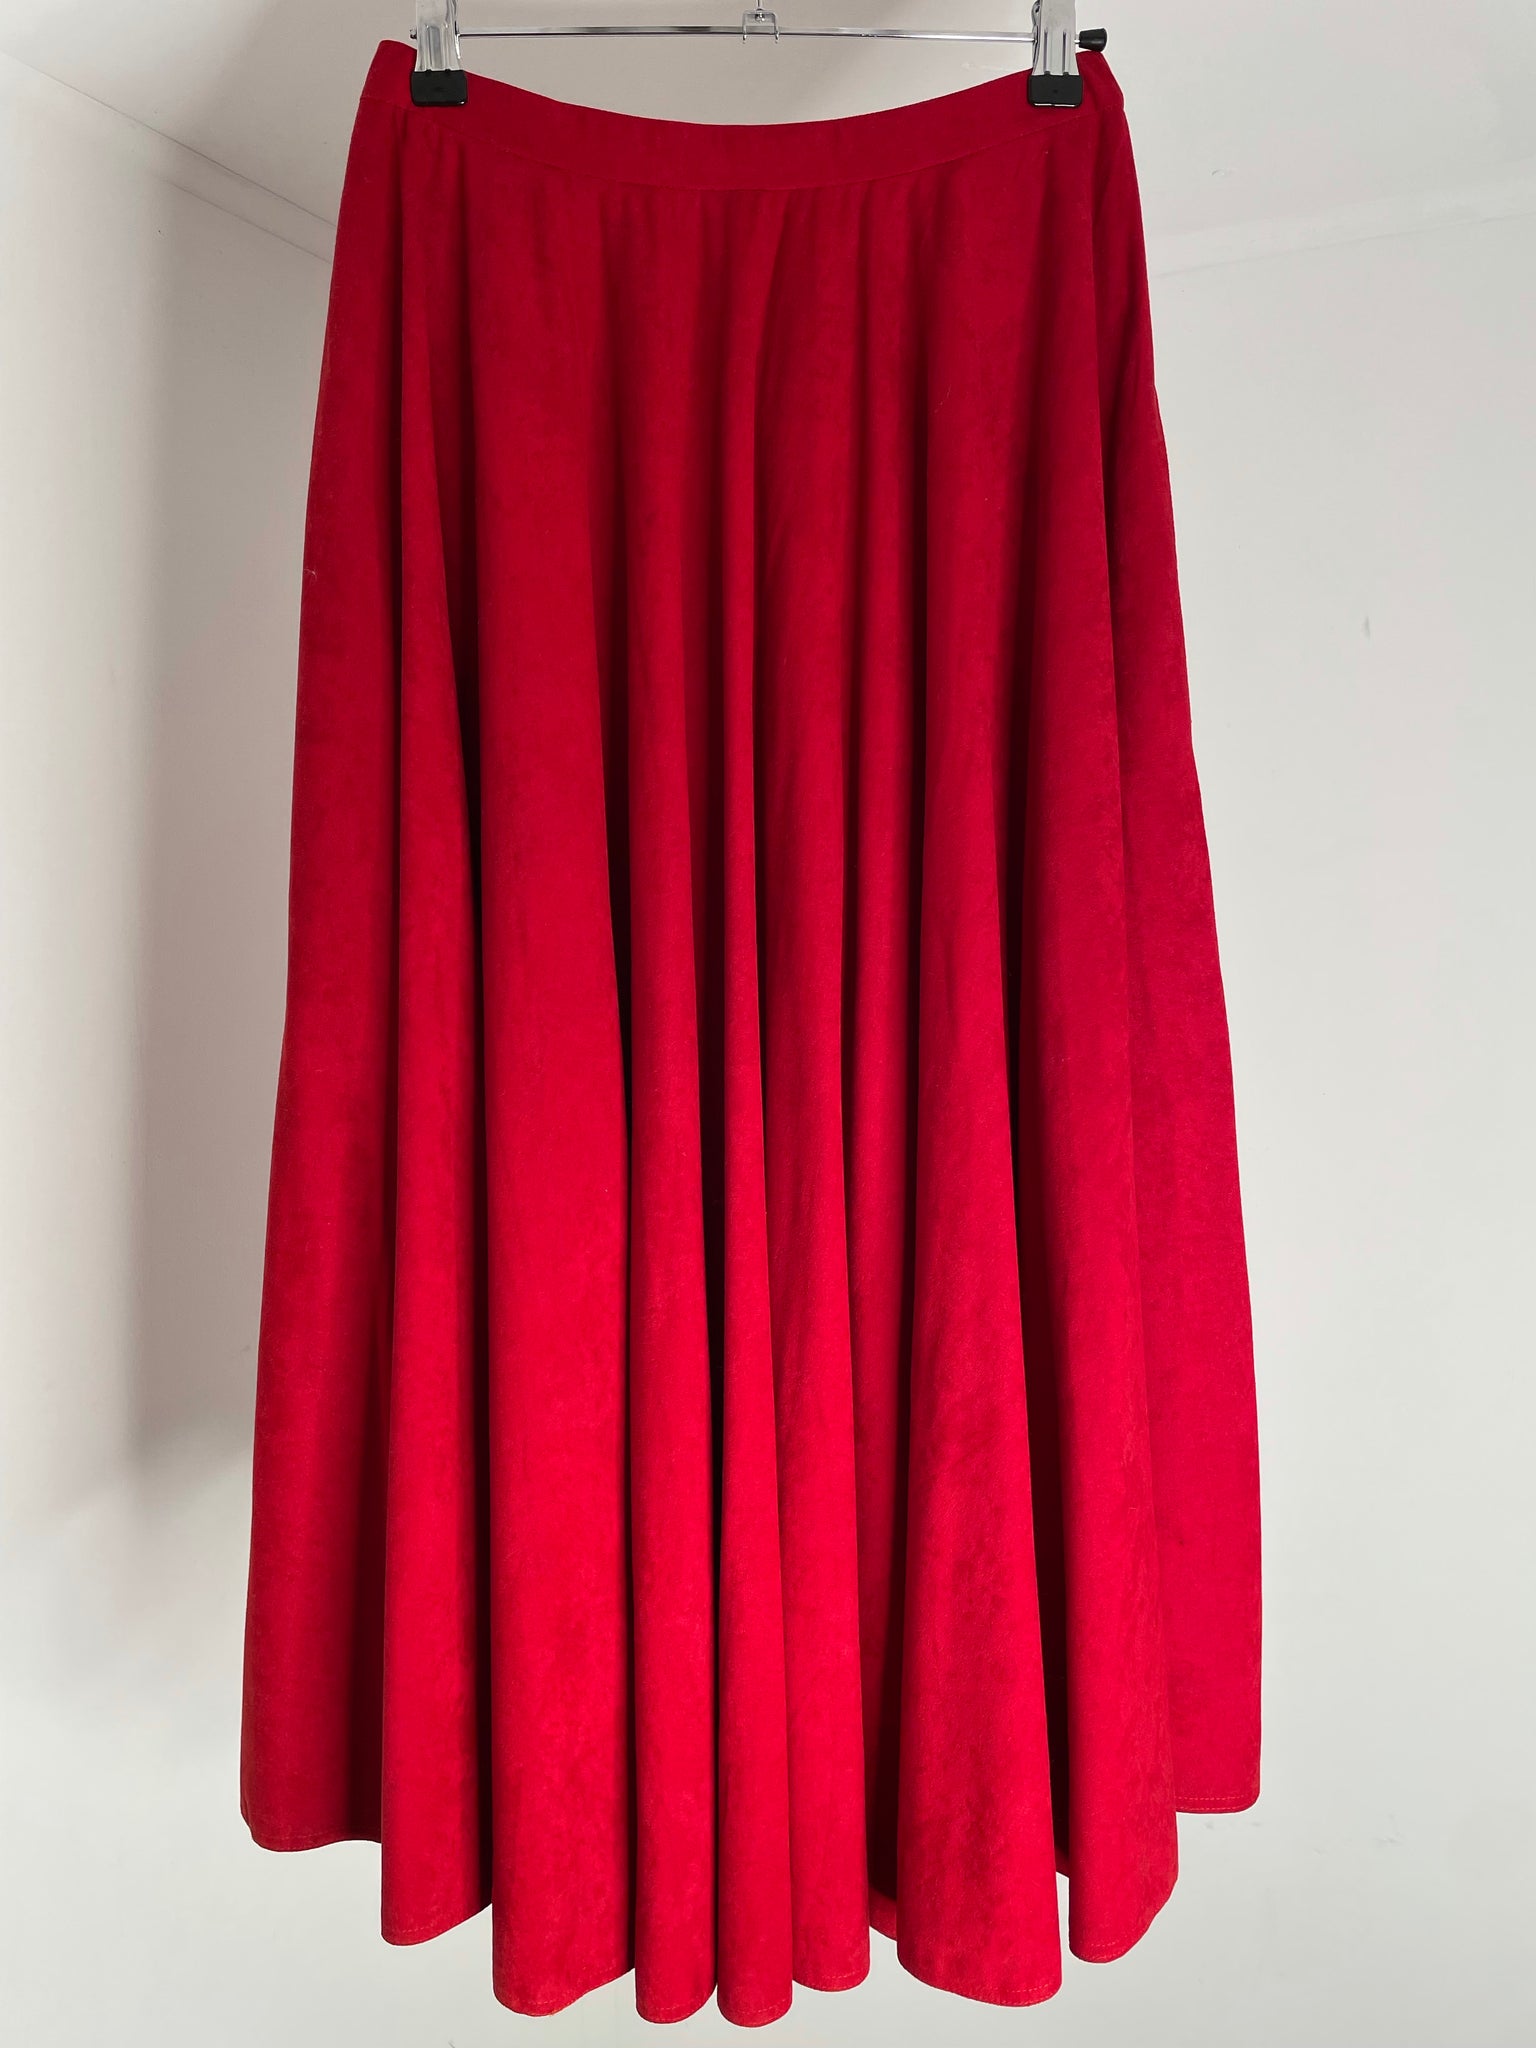 Cherry Red Skirt 40